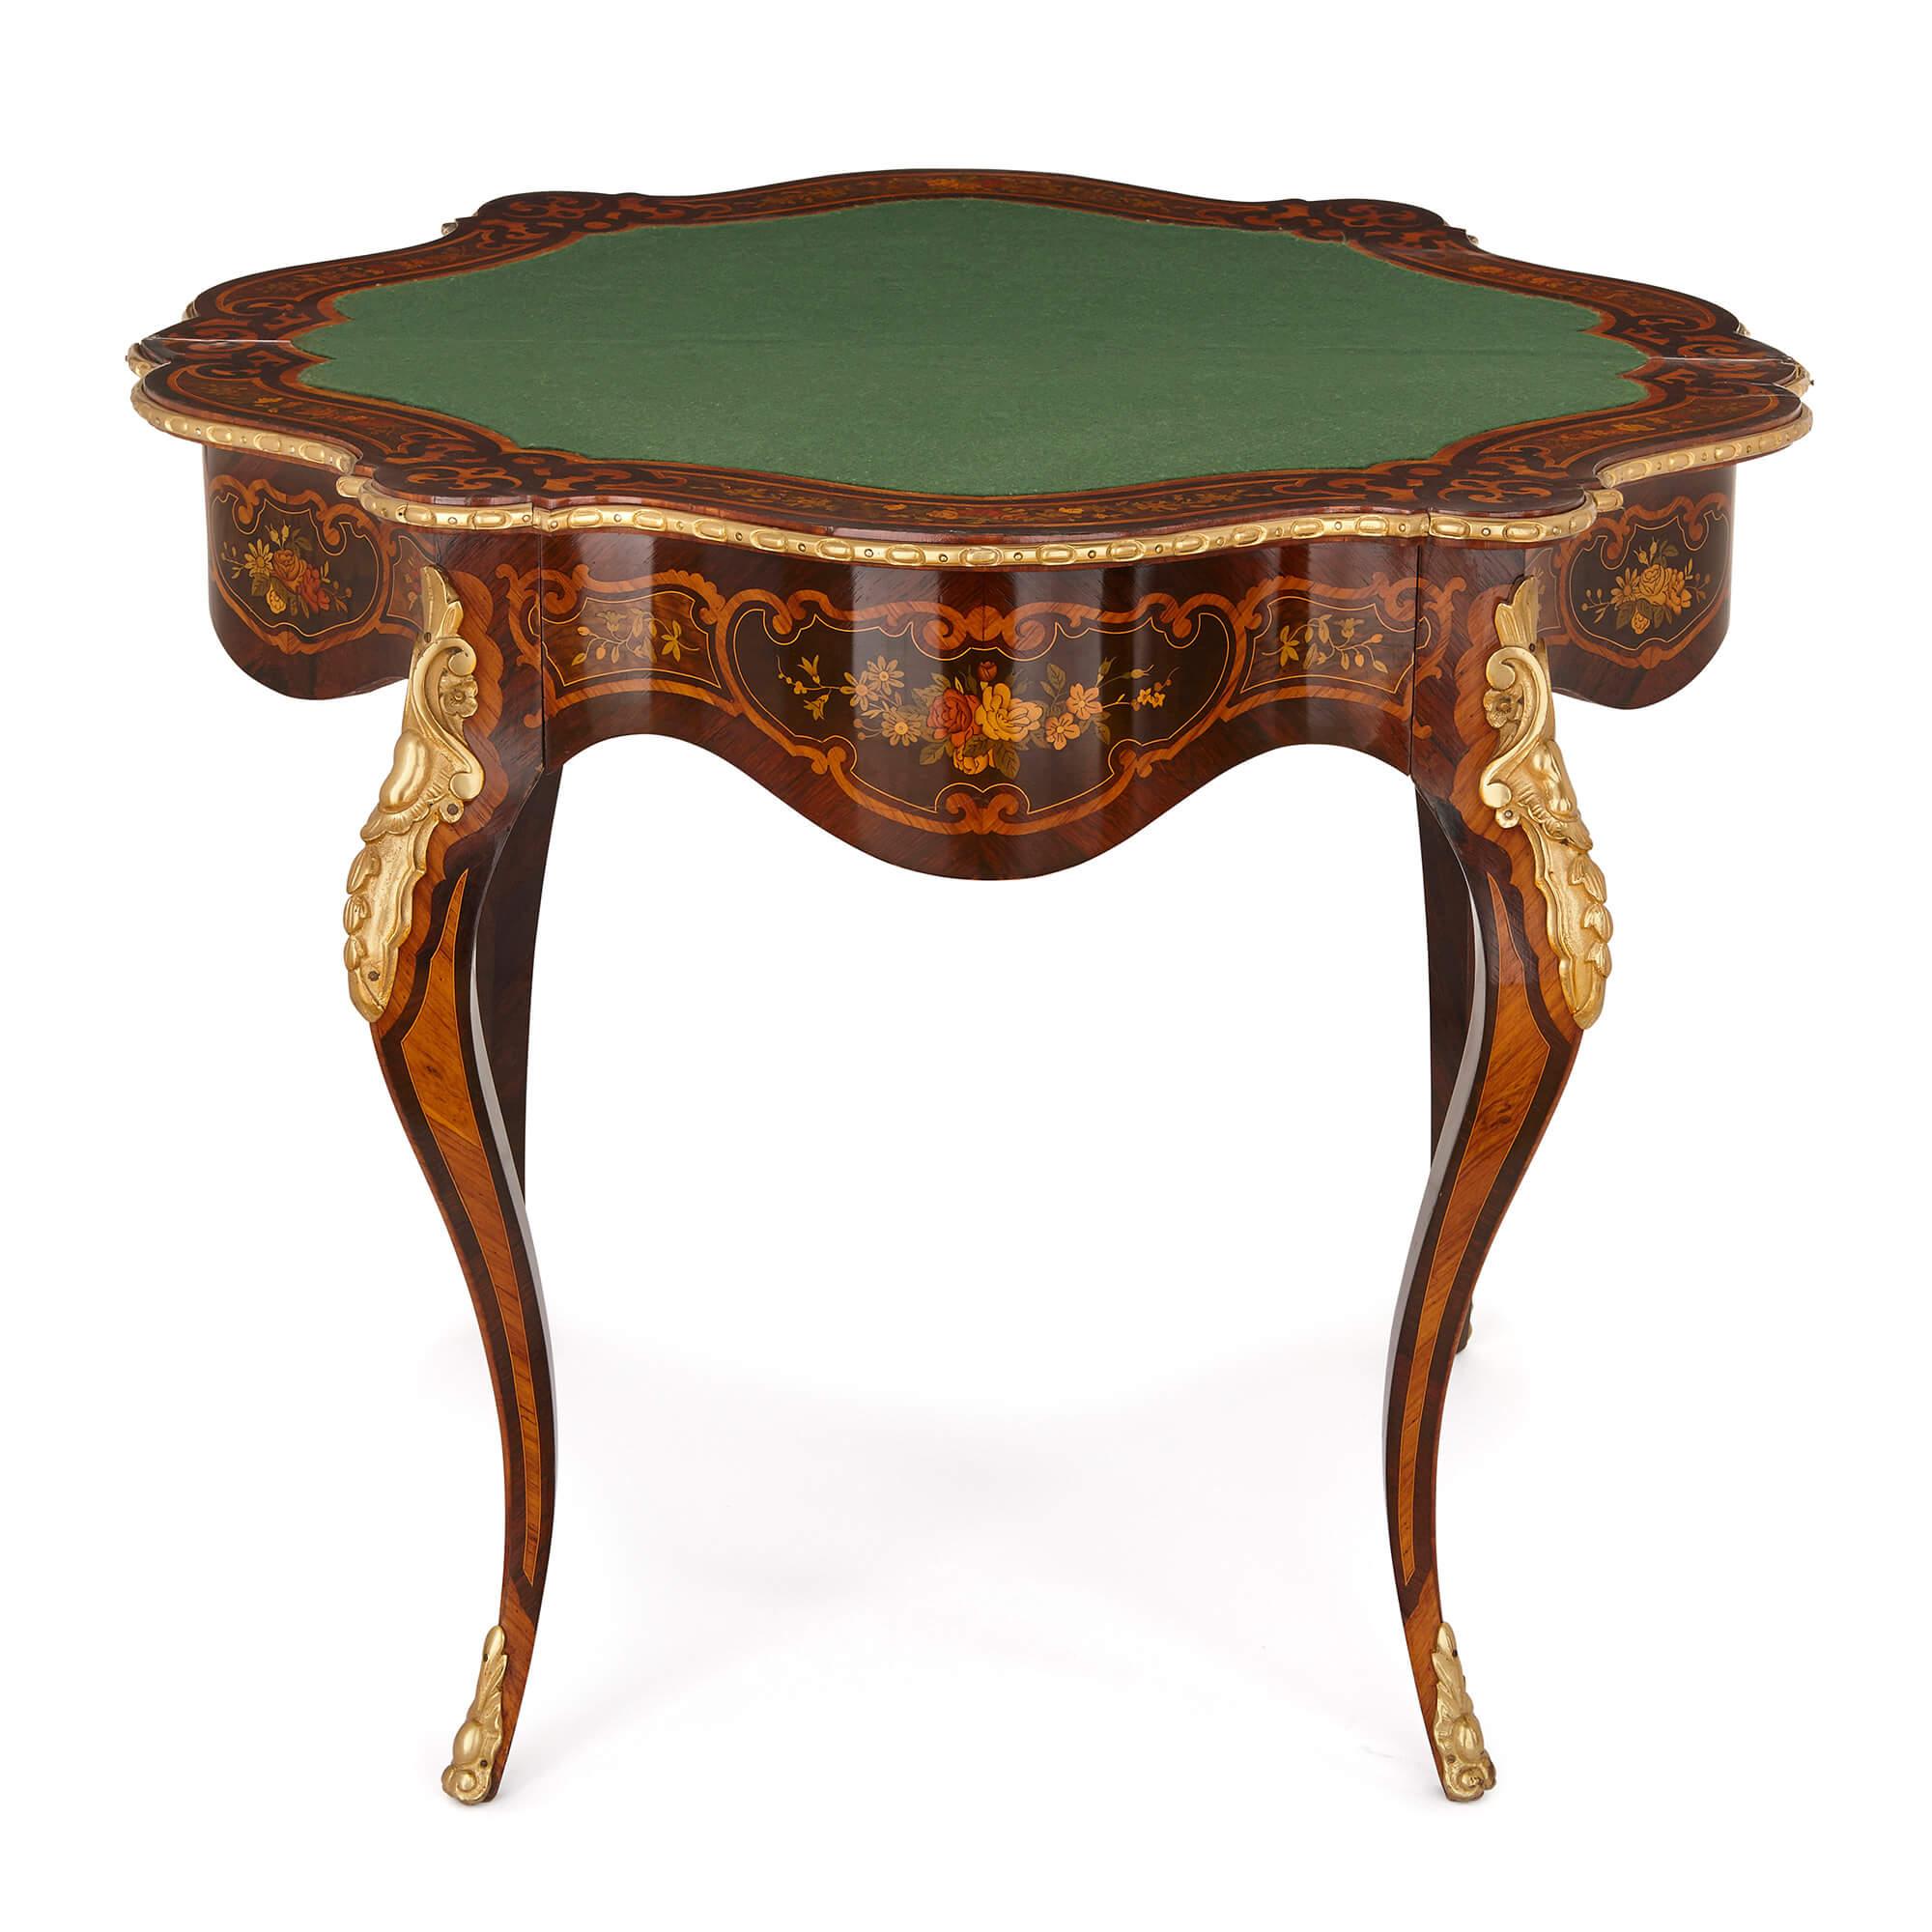 Cette belle table ancienne est fabriquée en style Louis XV, synonyme de grâce, d'élégance et d'exubérance du design. Fabriquée à partir de matériaux luxueux et présentant de fins détails de marqueterie, la table mettra en valeur et complètera, aussi